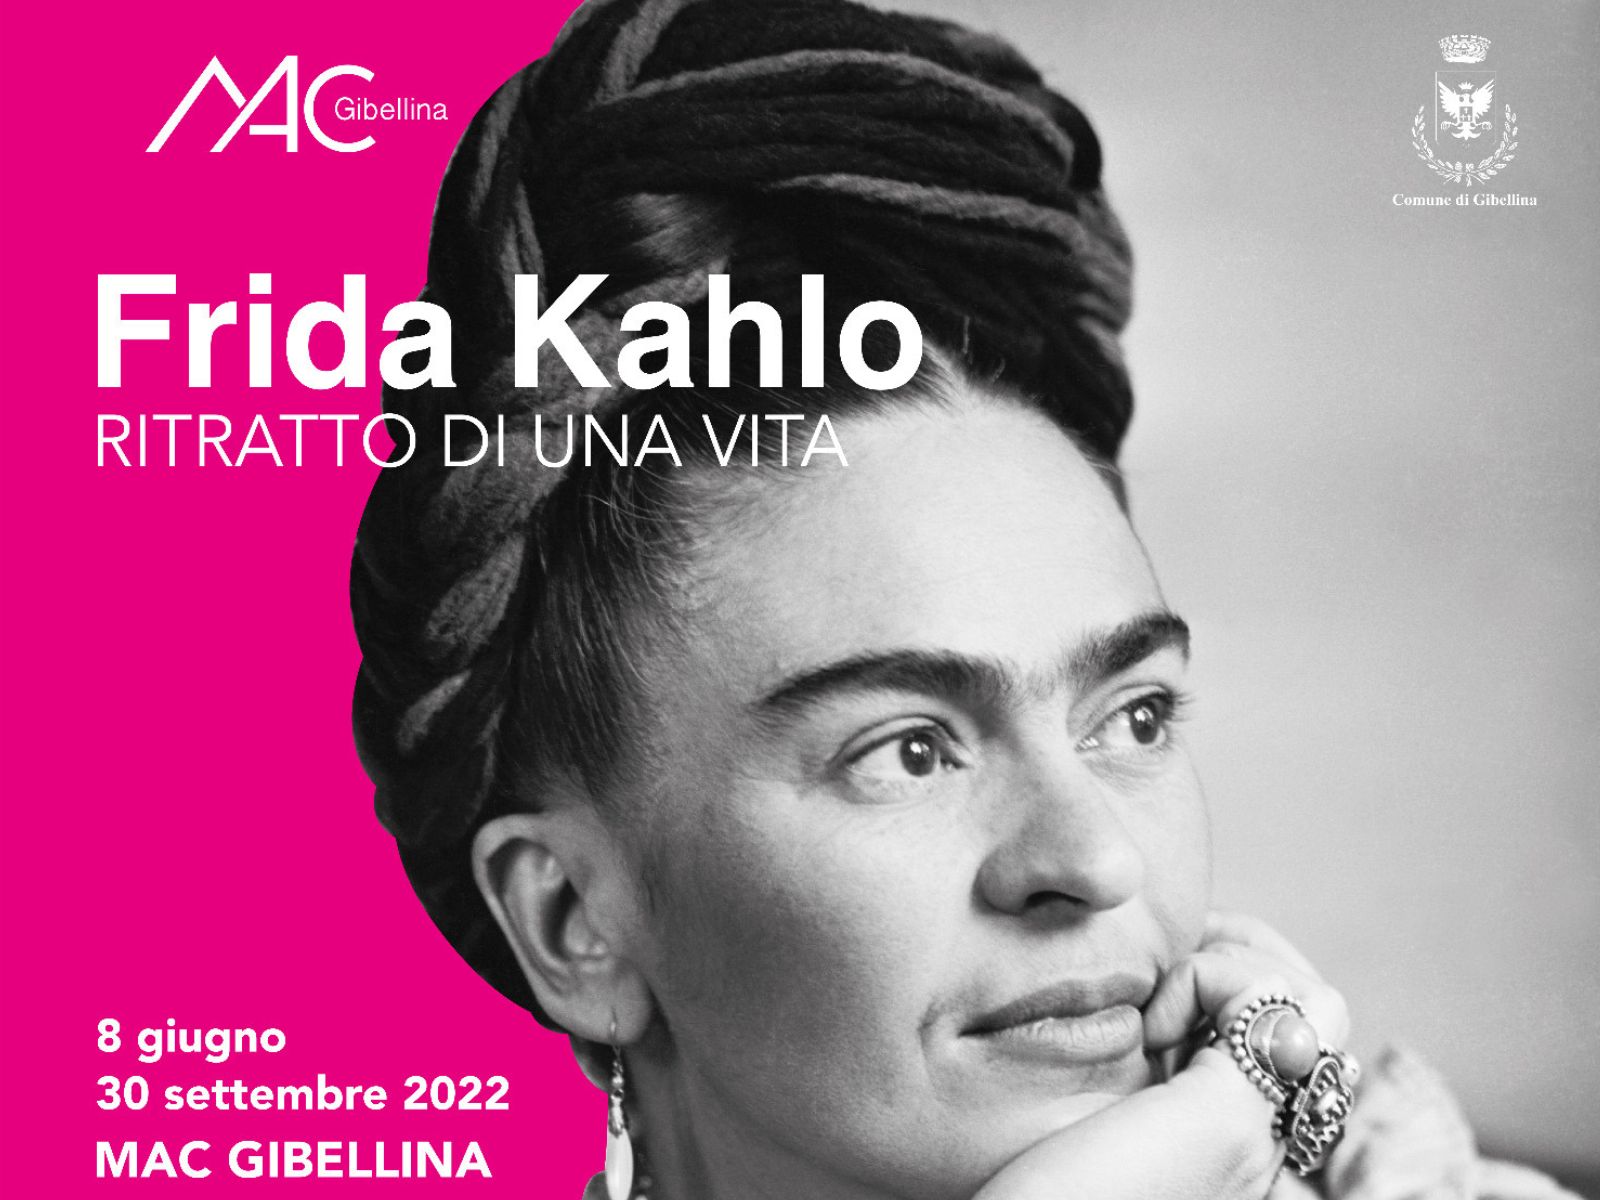 Frida Kahlo, portrait d’une vie : l’exposition à Gibellina